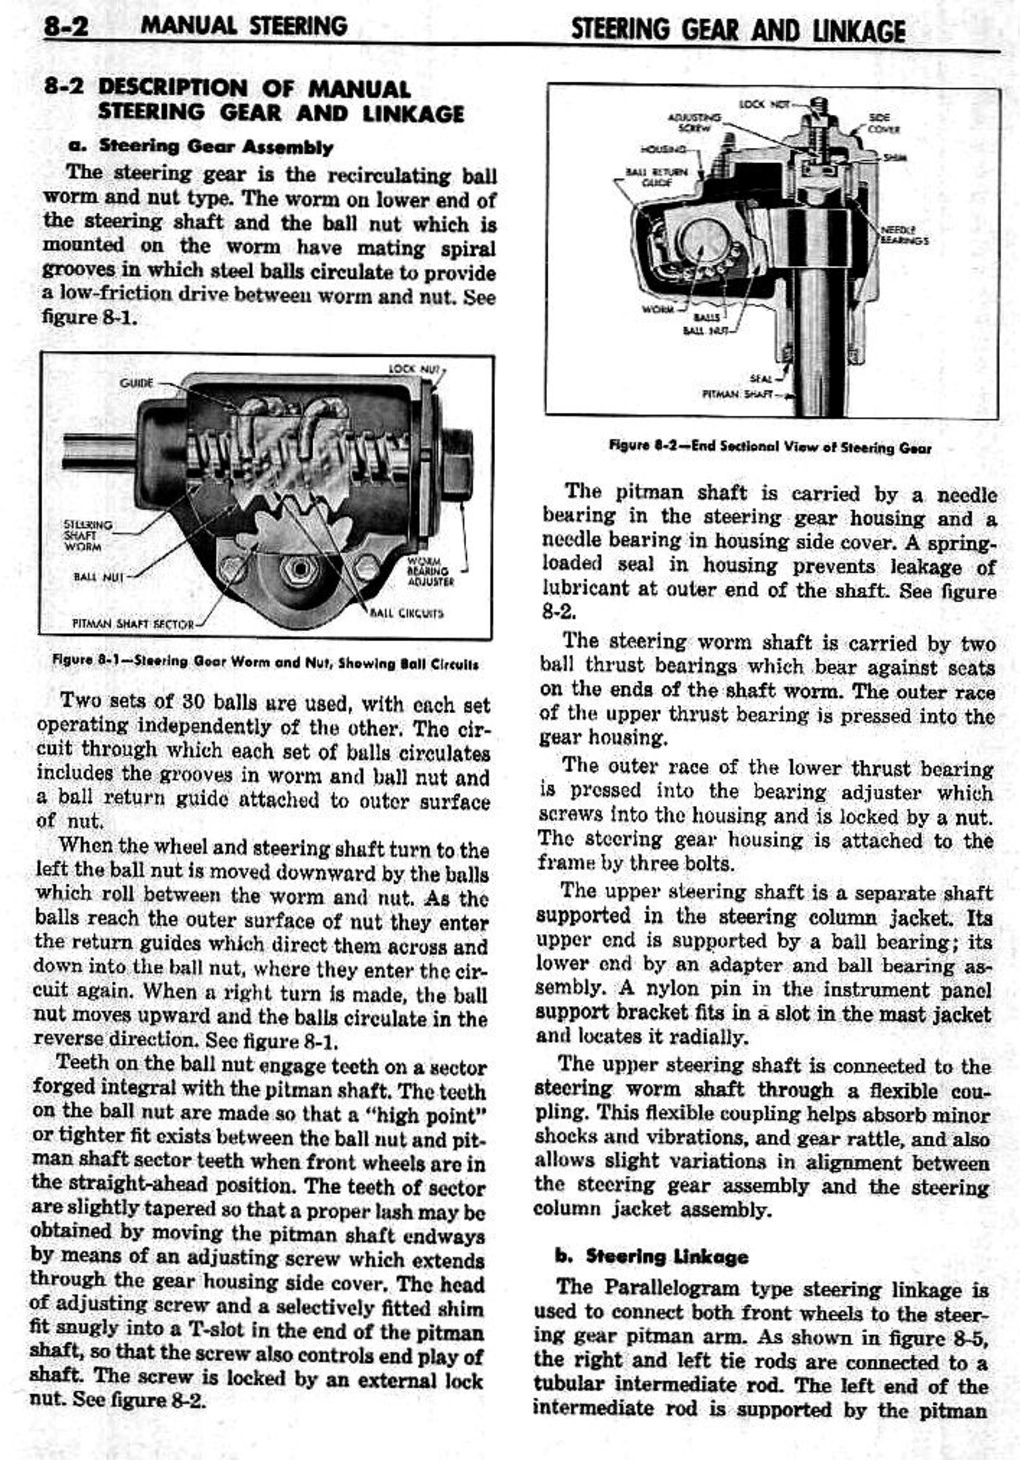 n_09 1959 Buick Shop Manual - Steering-002-002.jpg